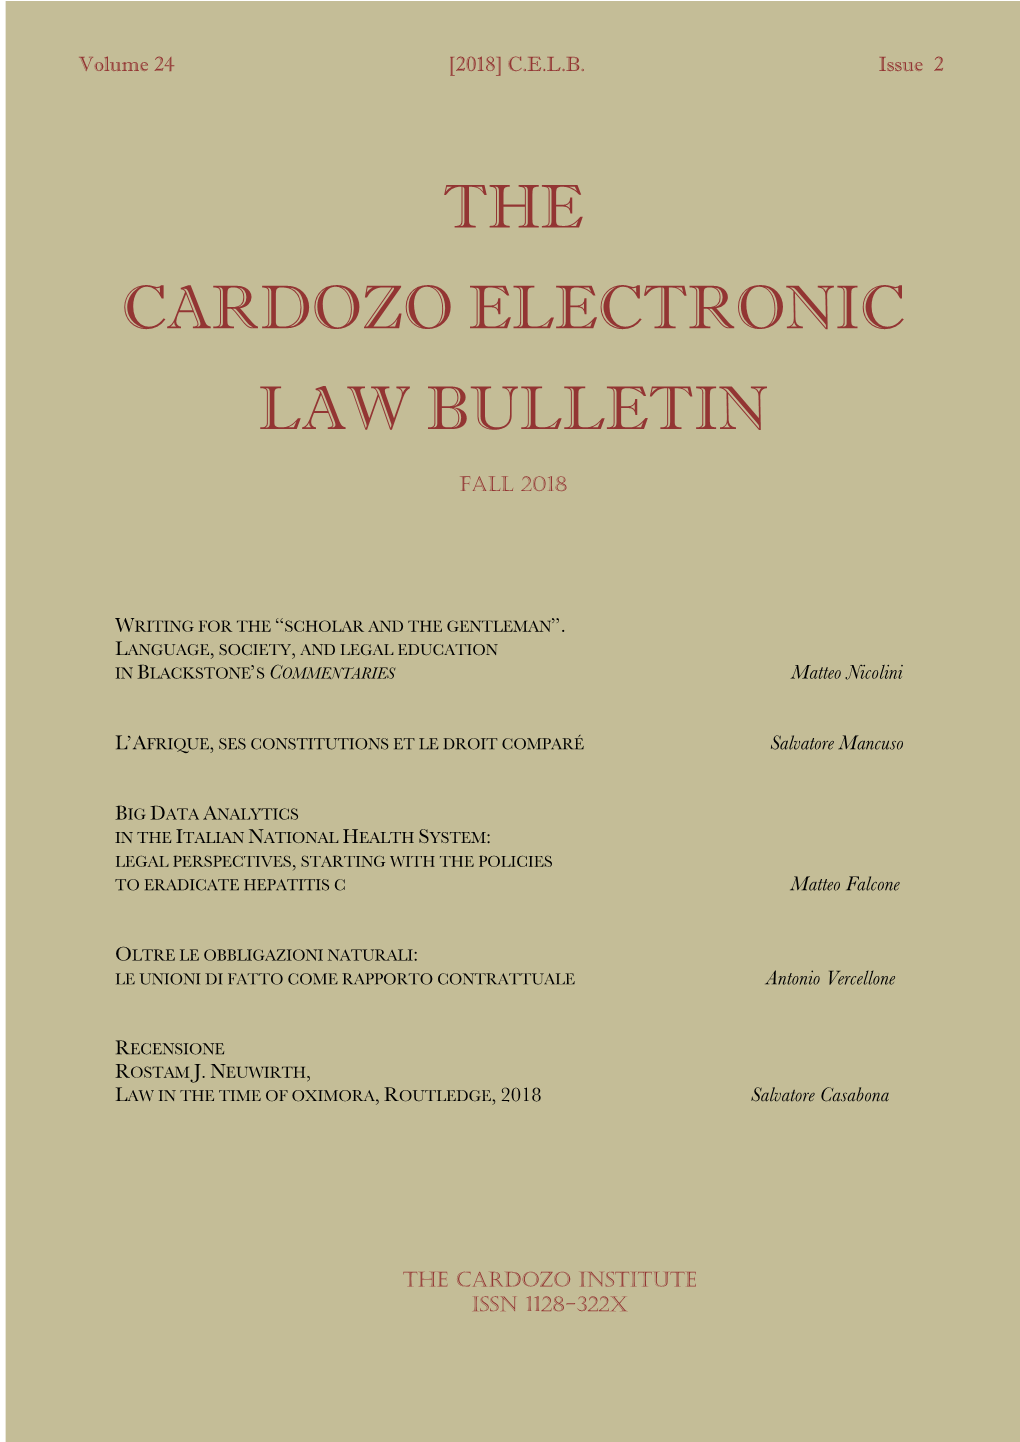 The Cardozo Electronic Law Bulletin